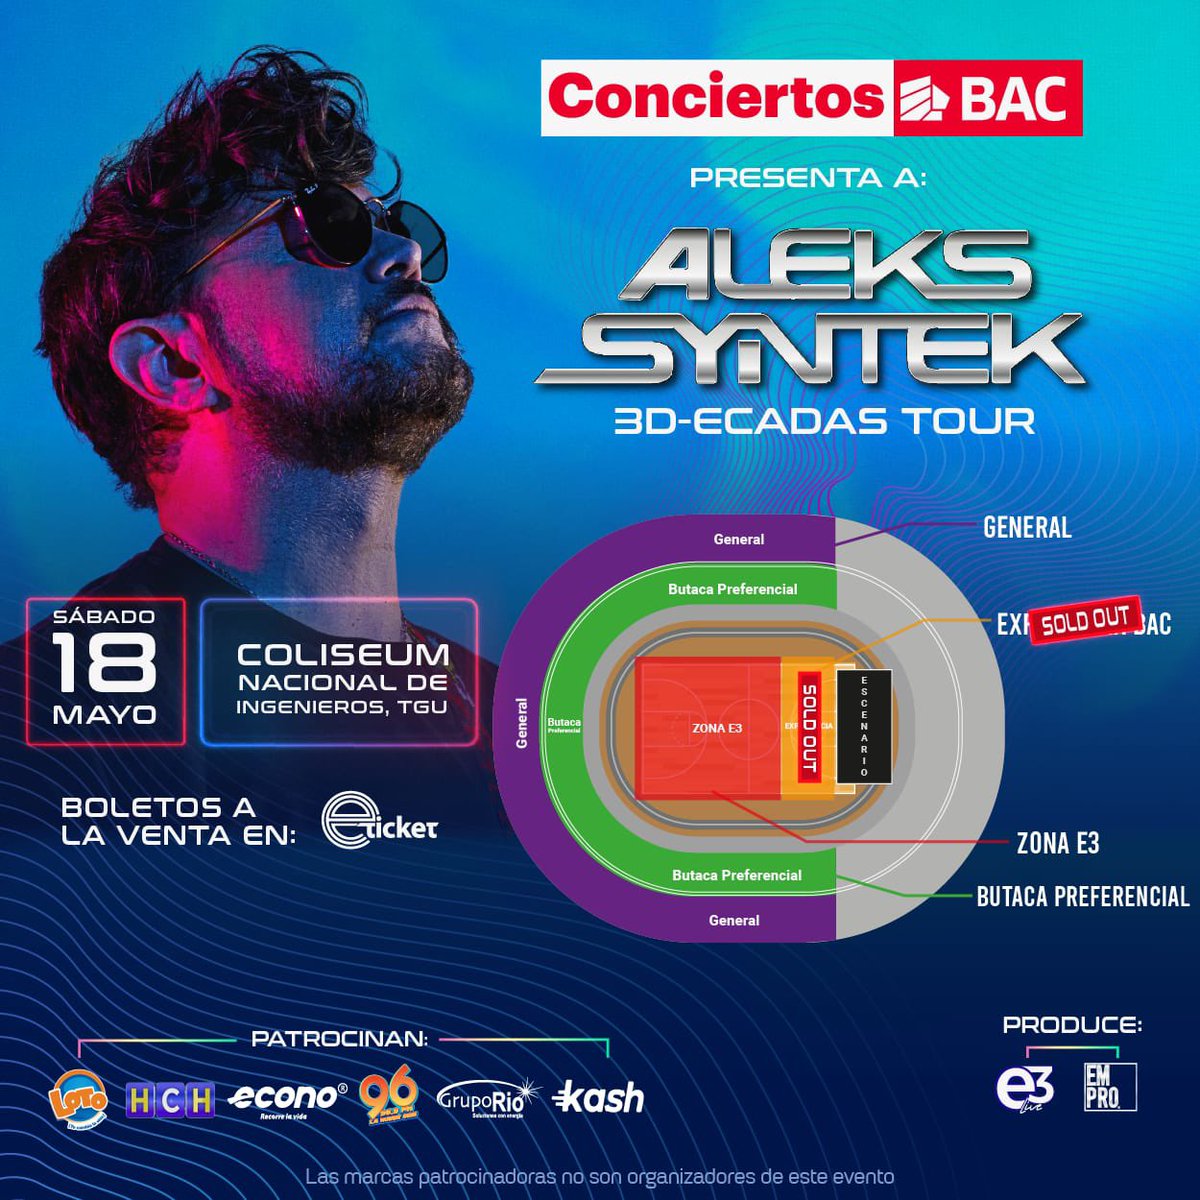 ¡Tu lugar en el concierto de Aleks Syntek es intocable! 🔊 

Experiencia BAC - SOLD OUT 

📆 18 Mayo 2024
🏟️ Coliseum Nacional De Ingenieros, Tegucigalpa
🎫 Boletos ya a la venta en 

eticket.hn
#AleksSyntek #Concierto #Tegucigalpa #E3Live #Honduras #Emprohn